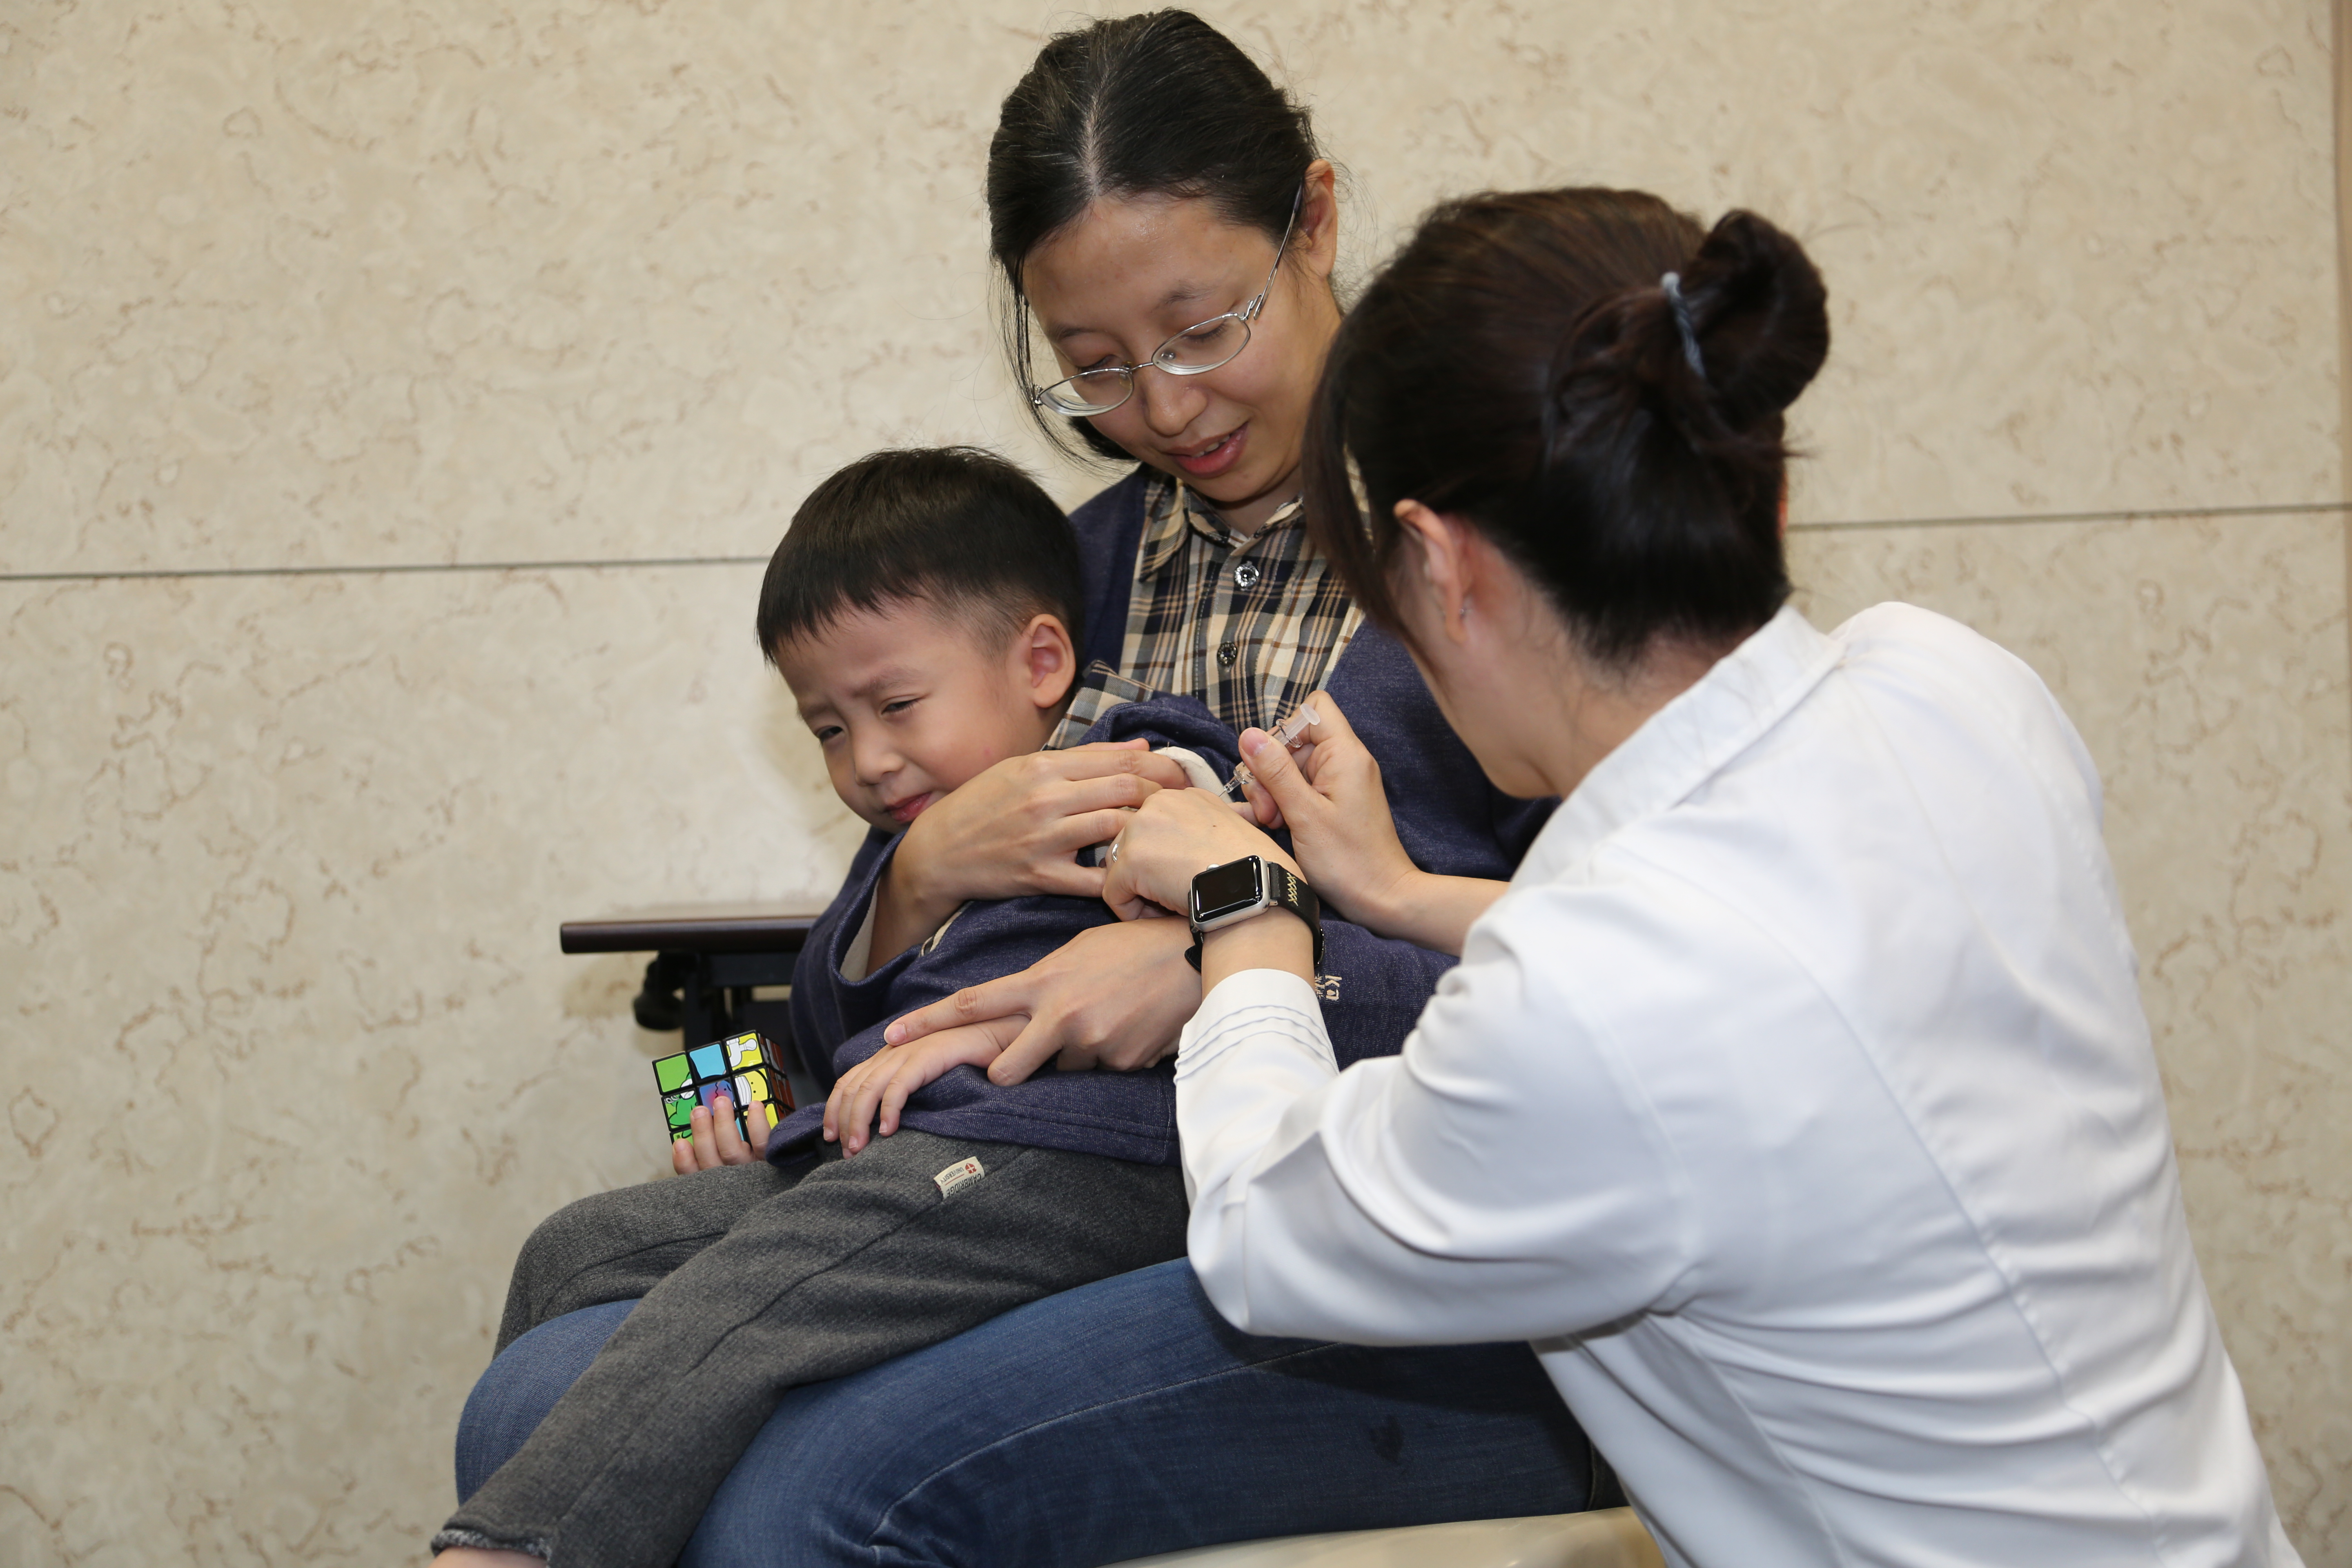 疾病管制署防疫醫師 劉宇倫今天帶學齡前的兒子接種流感疫苗.JPG